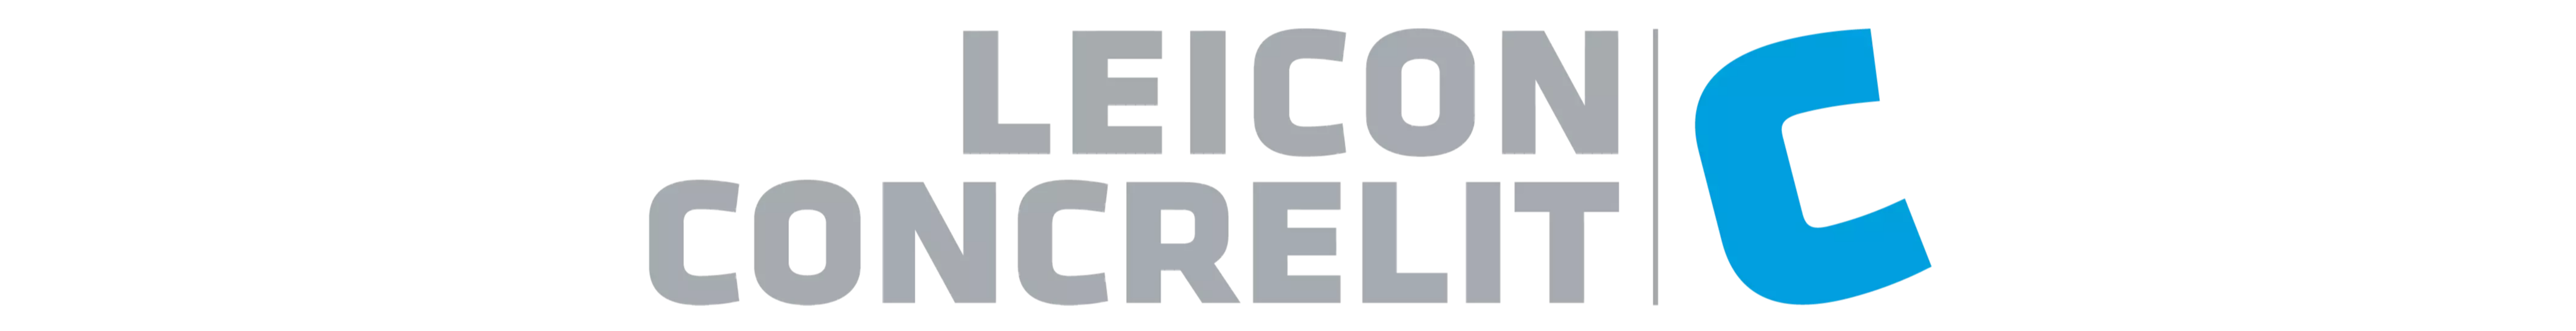 Leicon / Concrelit